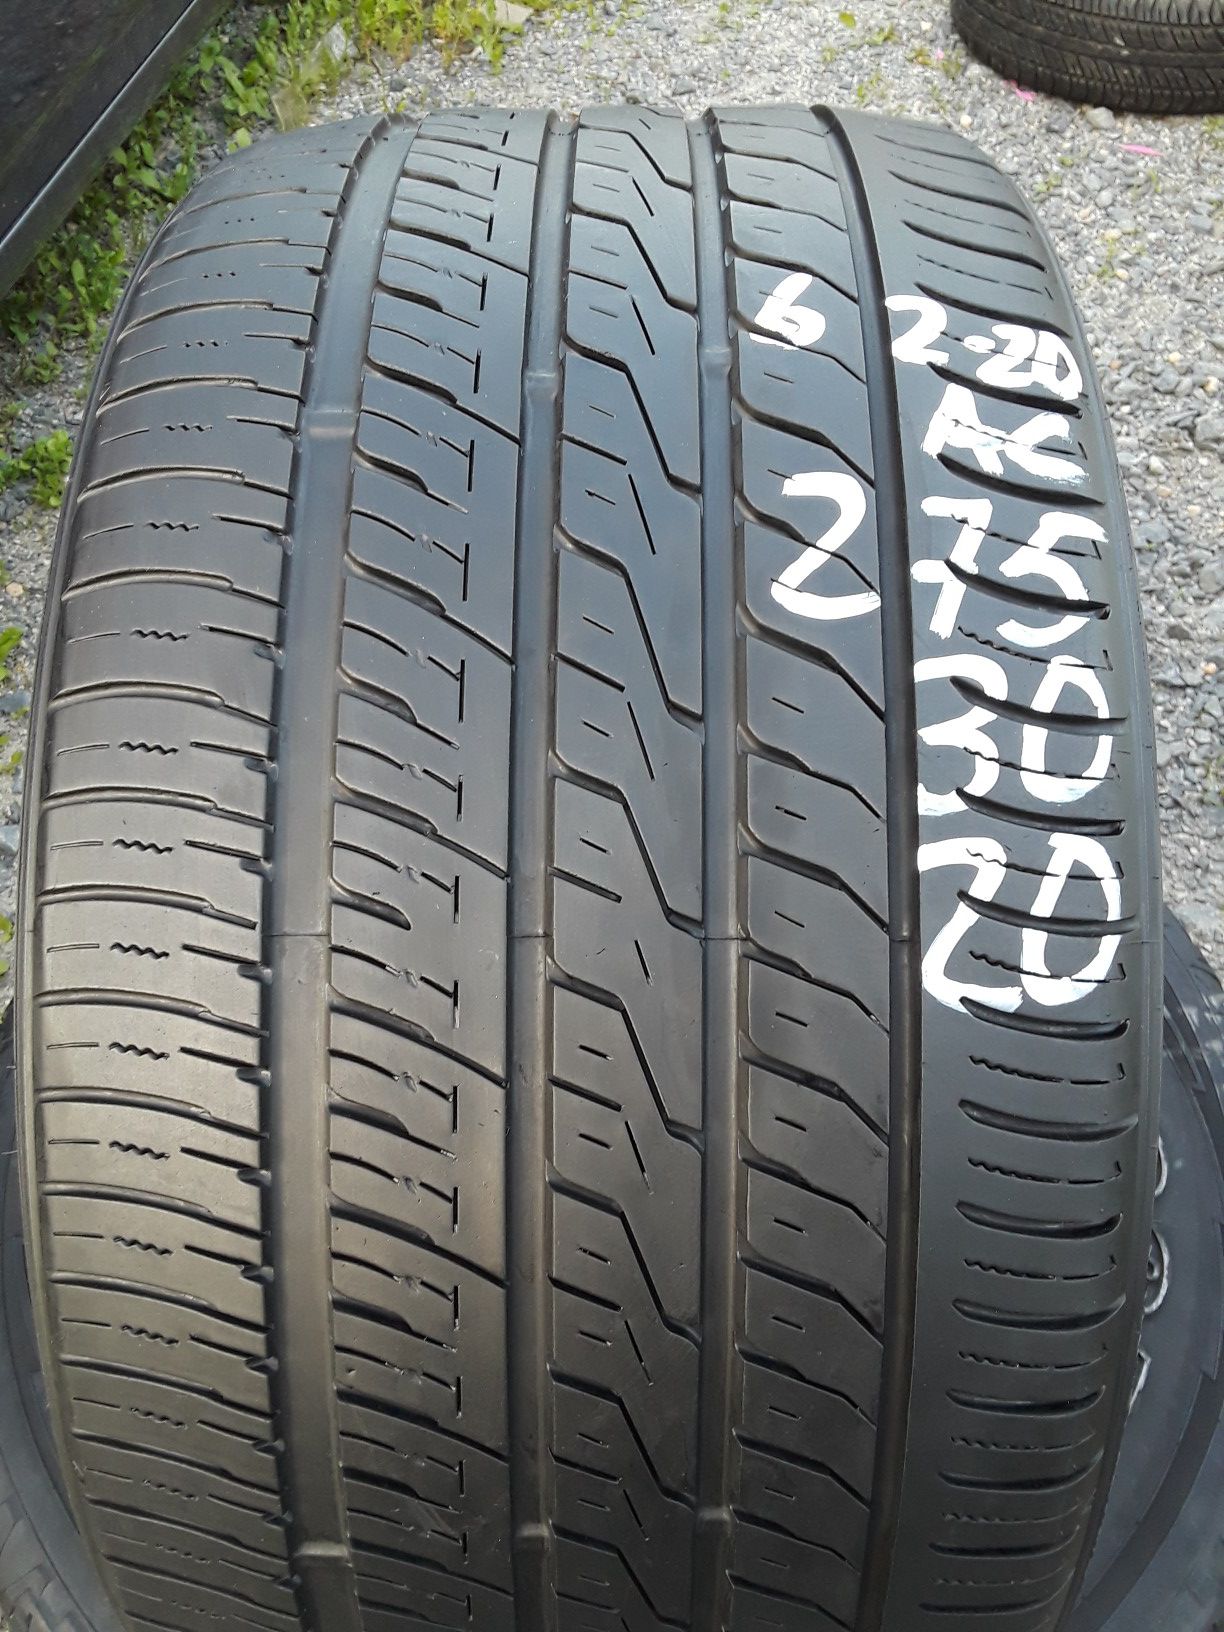 275/30-20 #1 tire